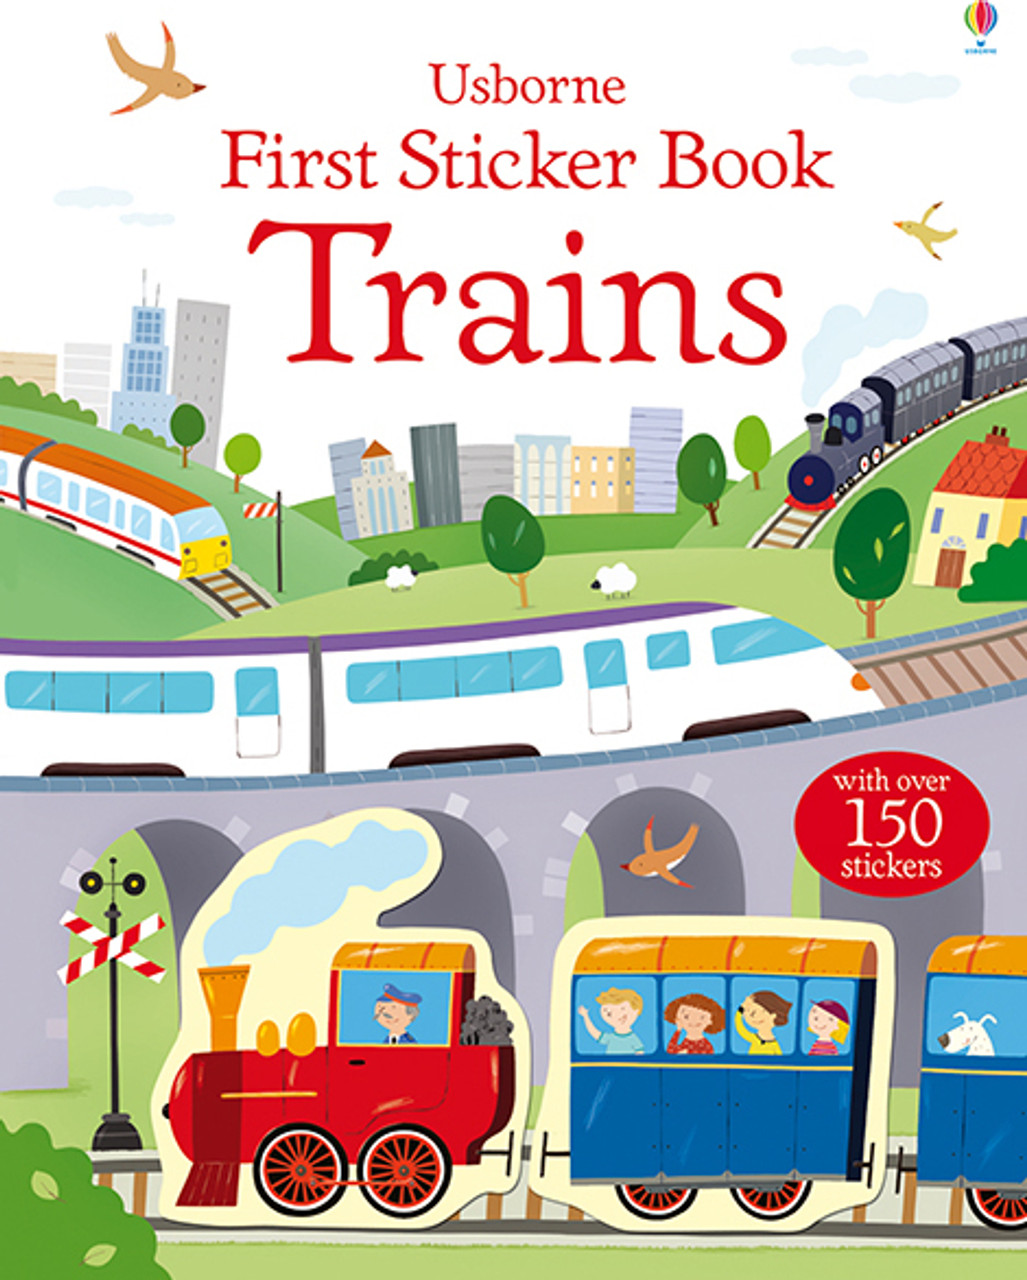 First Sticker Book, Trains